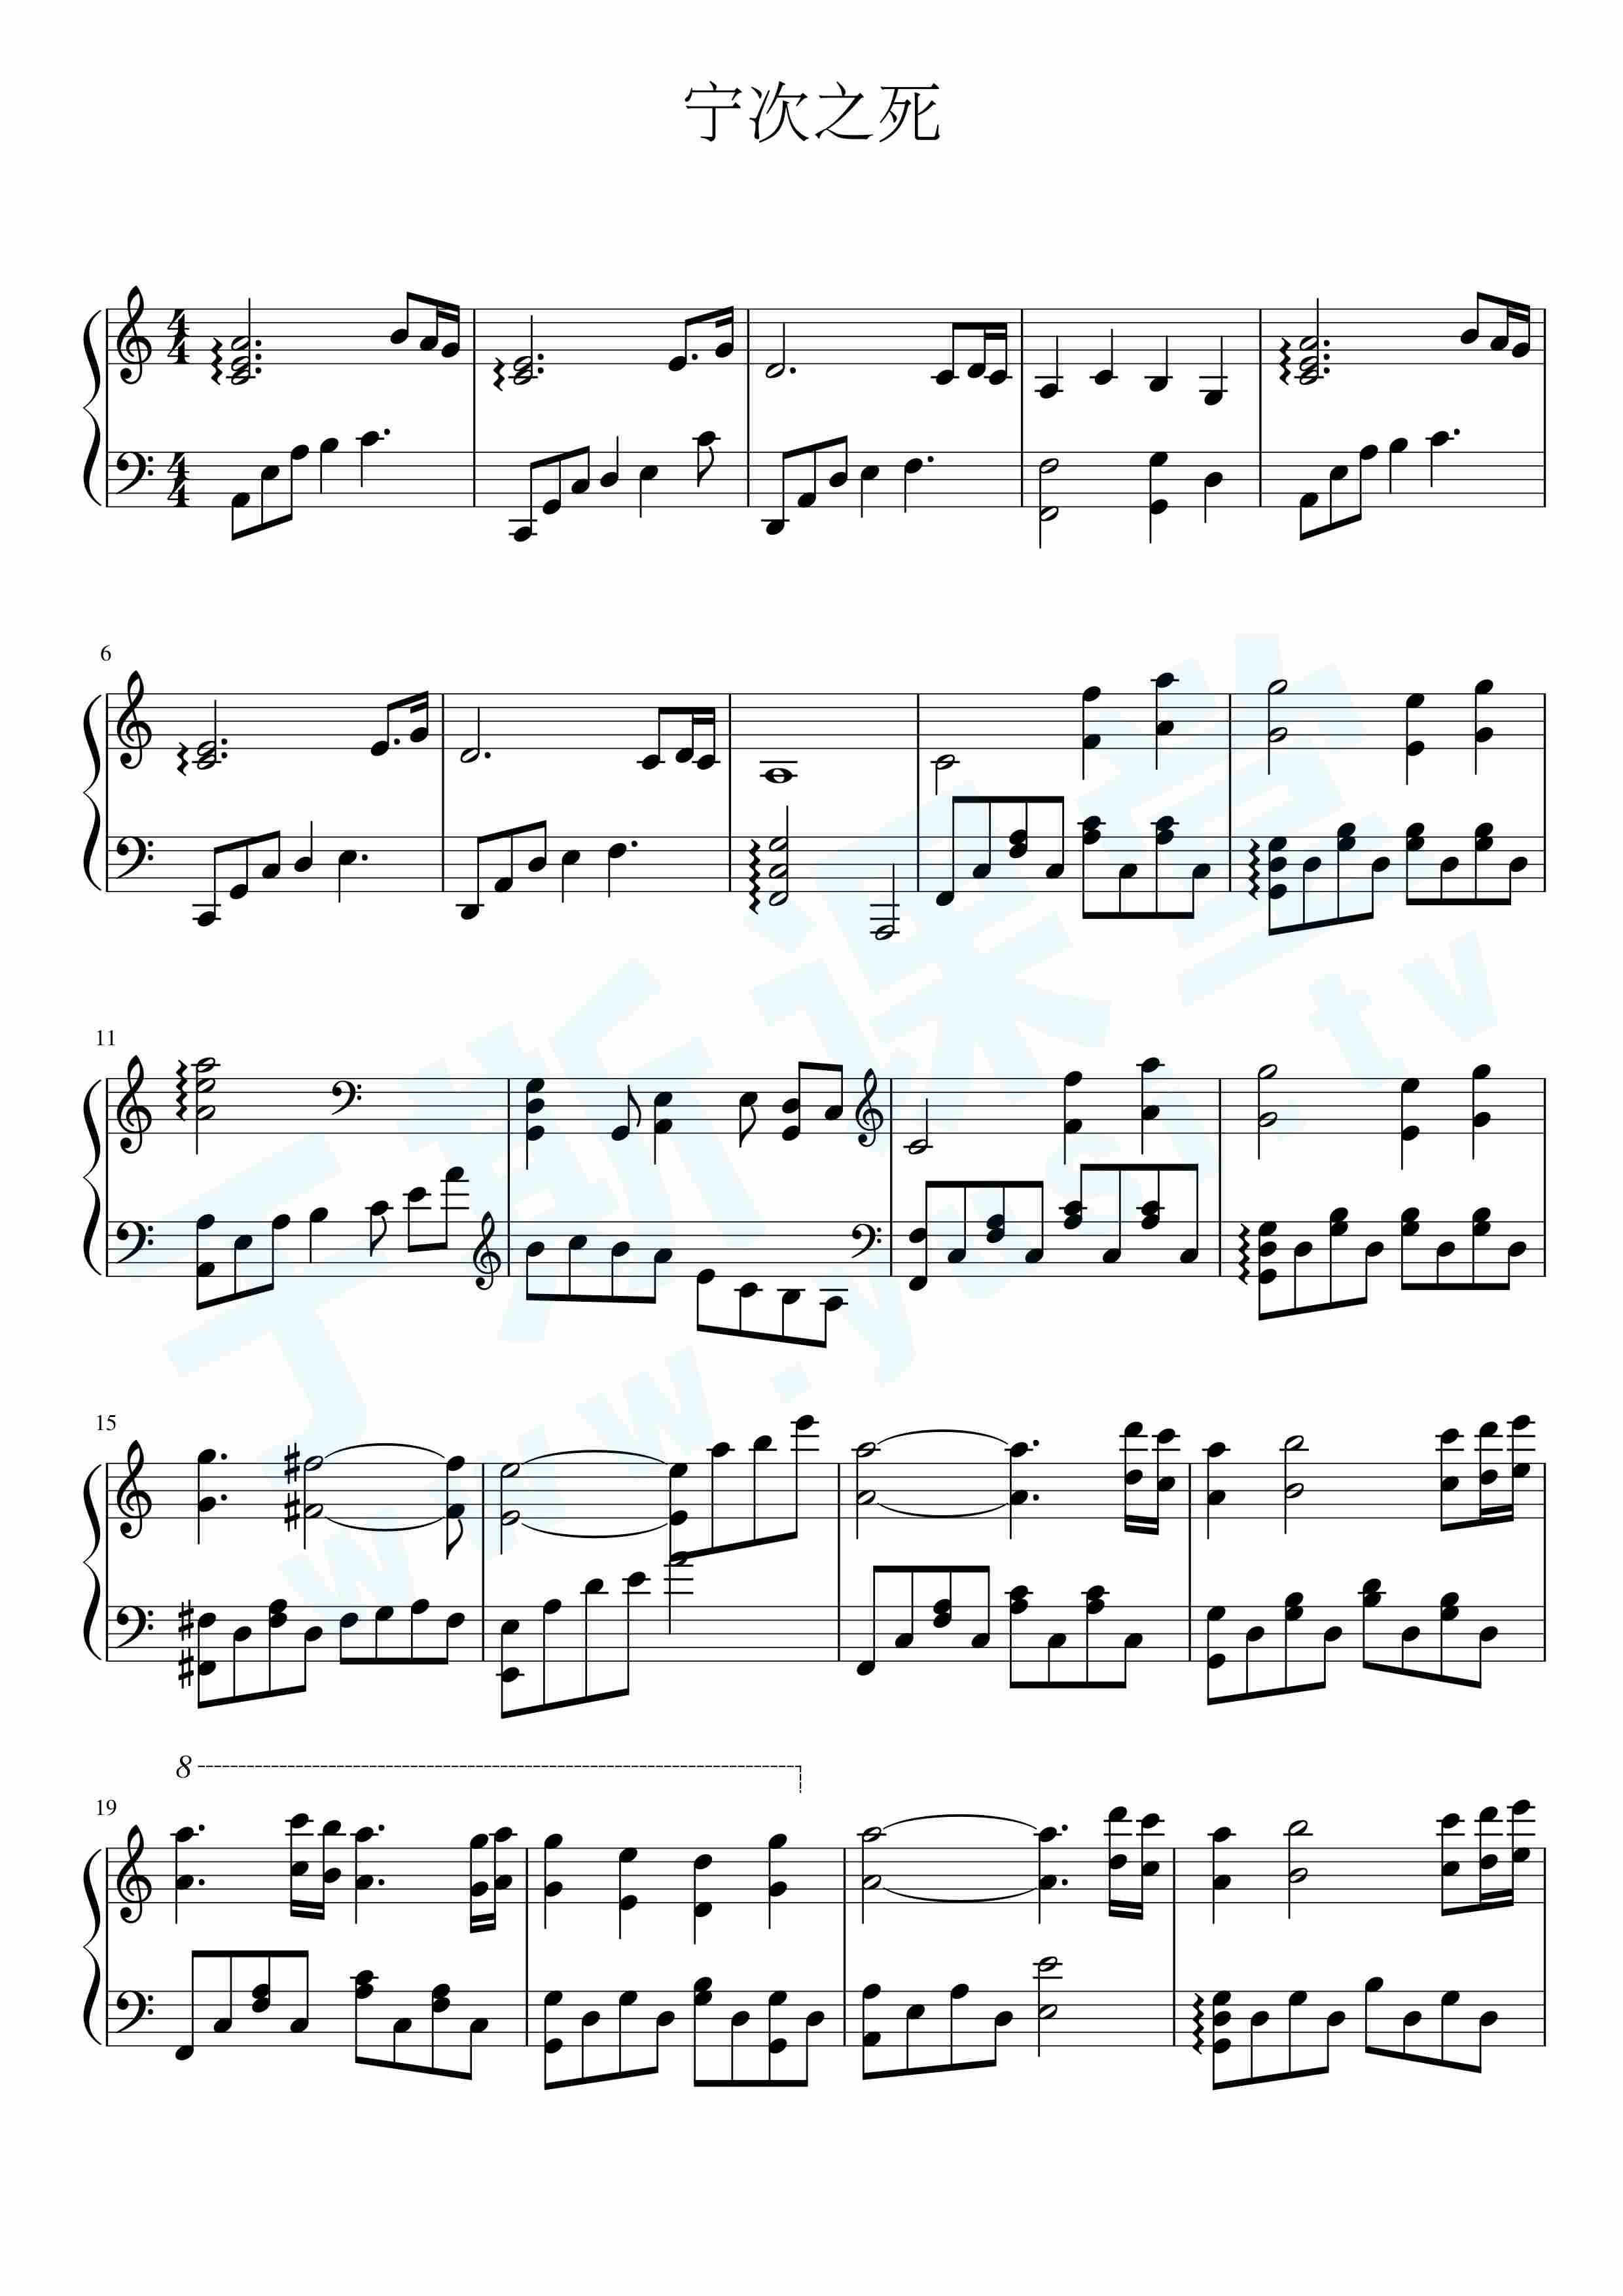 宁次之死-钢琴谱文件（五线谱、双手简谱、数字谱、Midi、PDF）免费下载